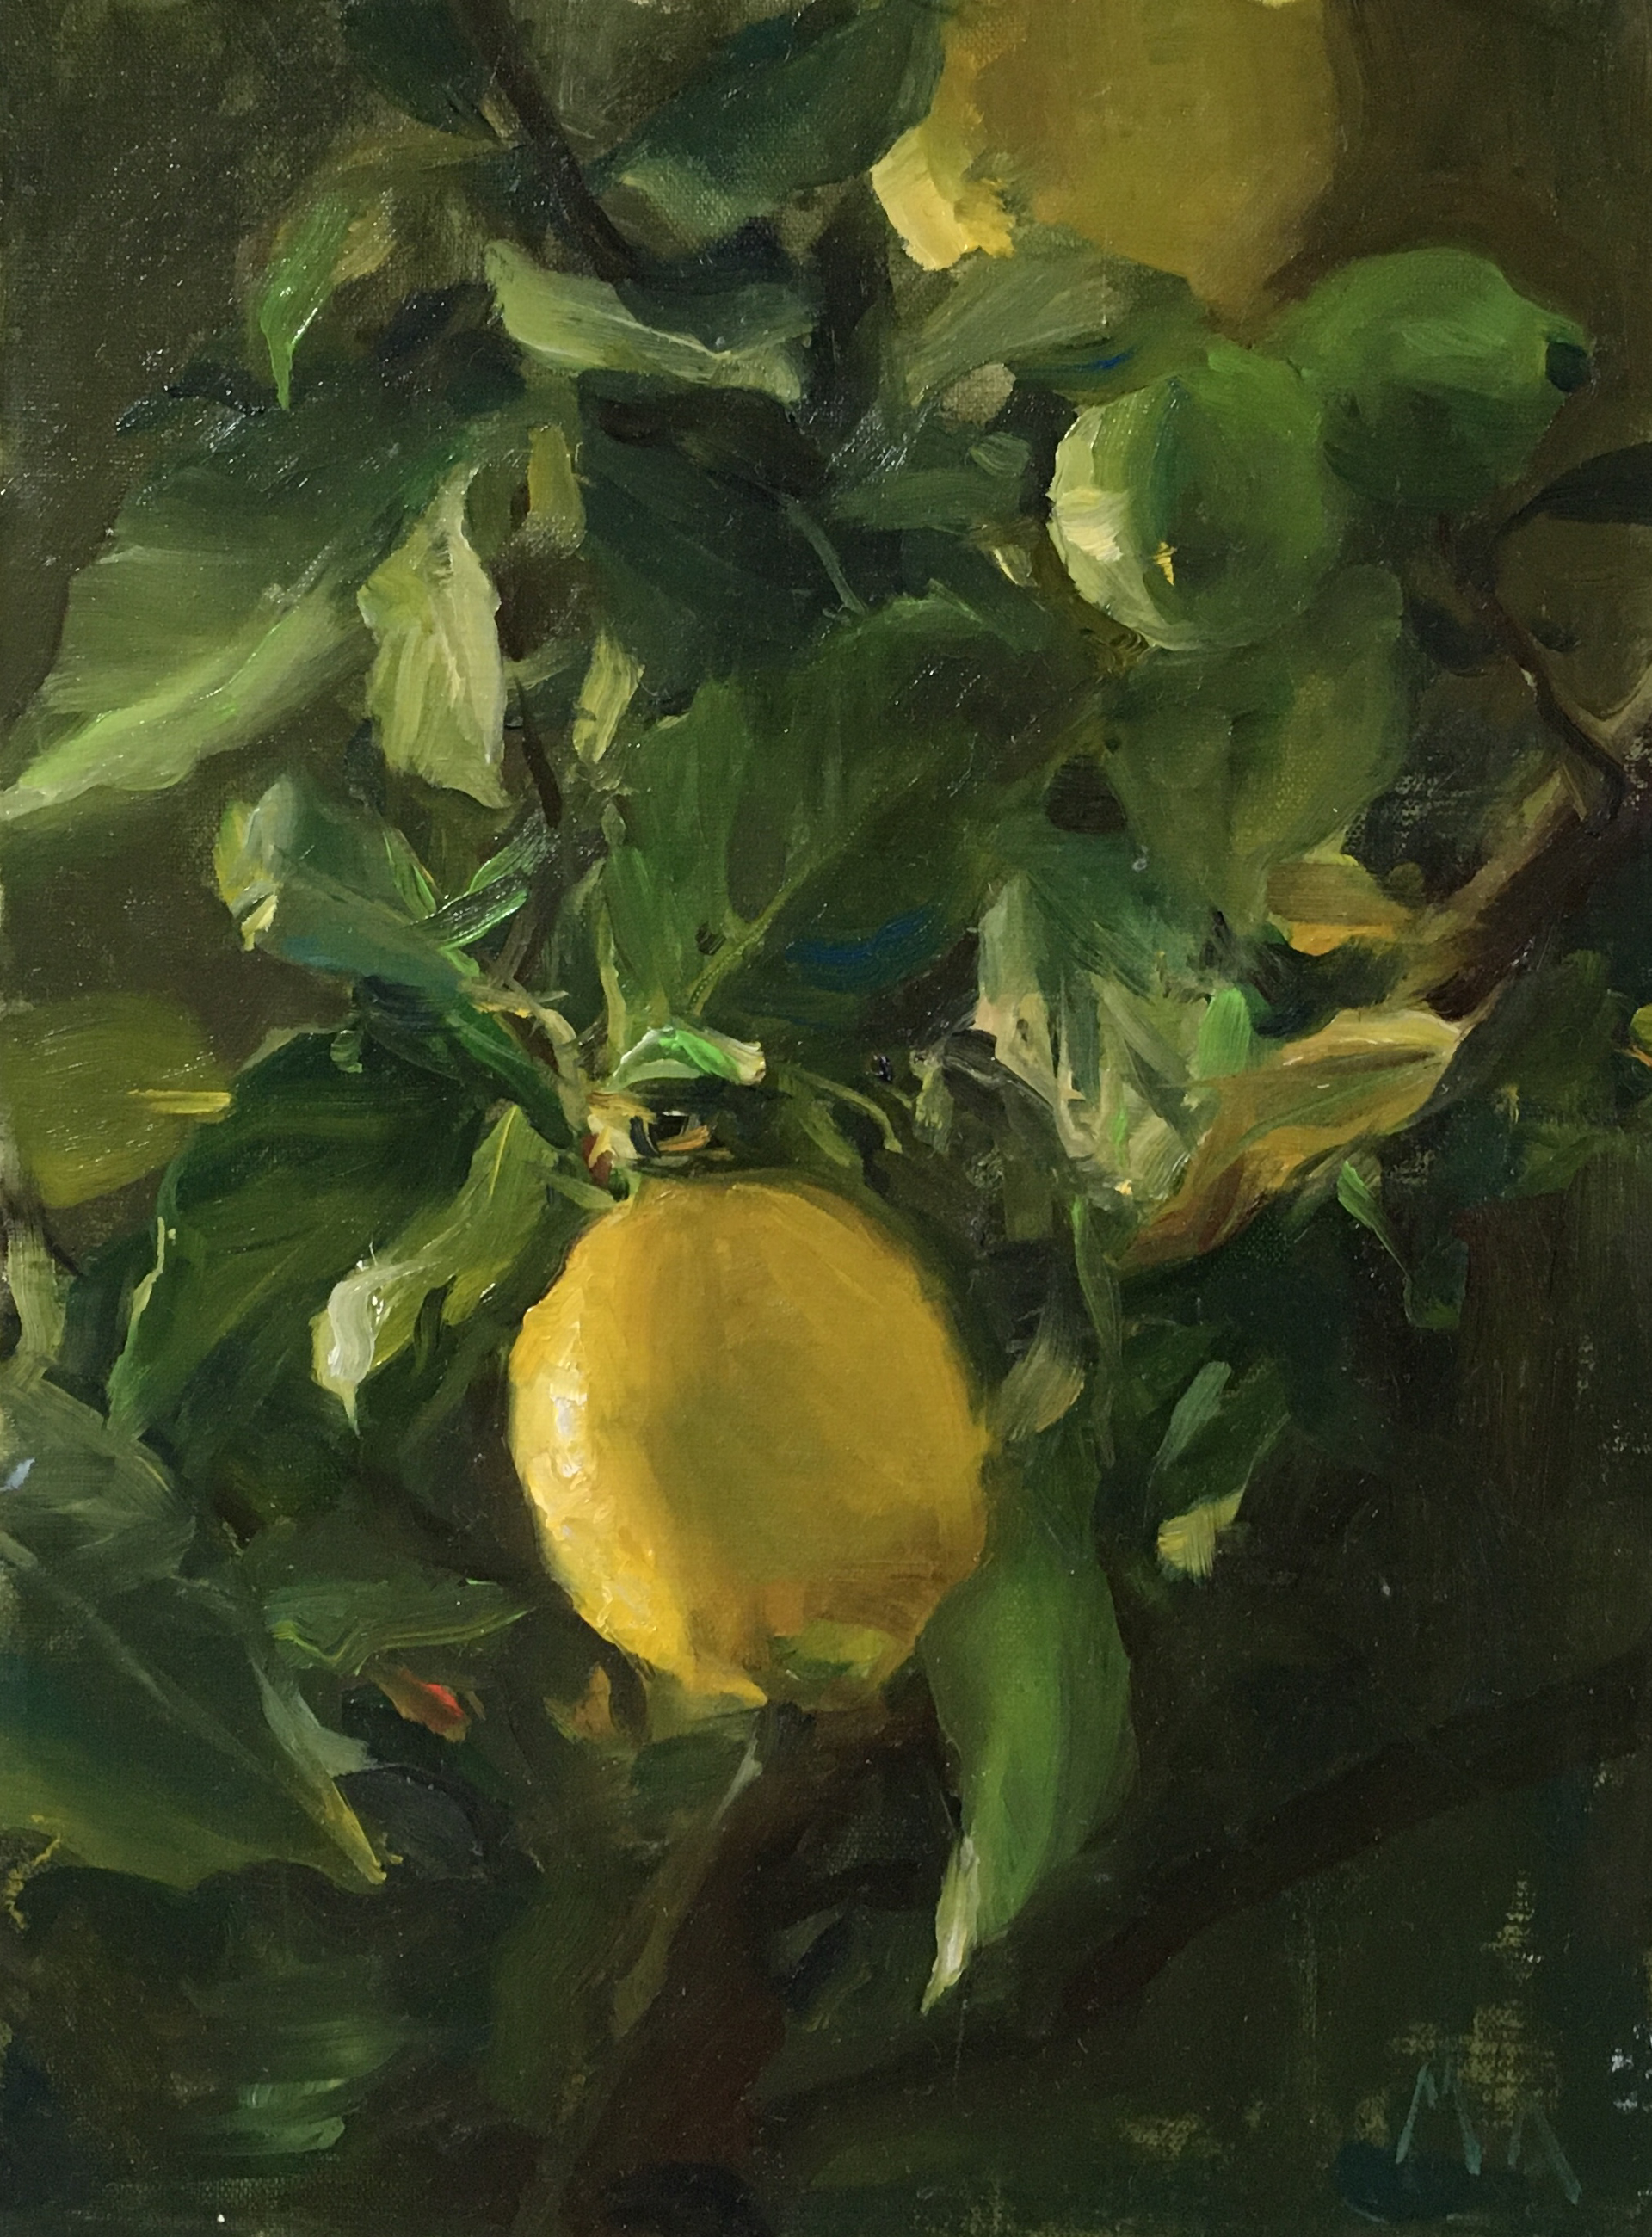 Lemons by Kyle Ma